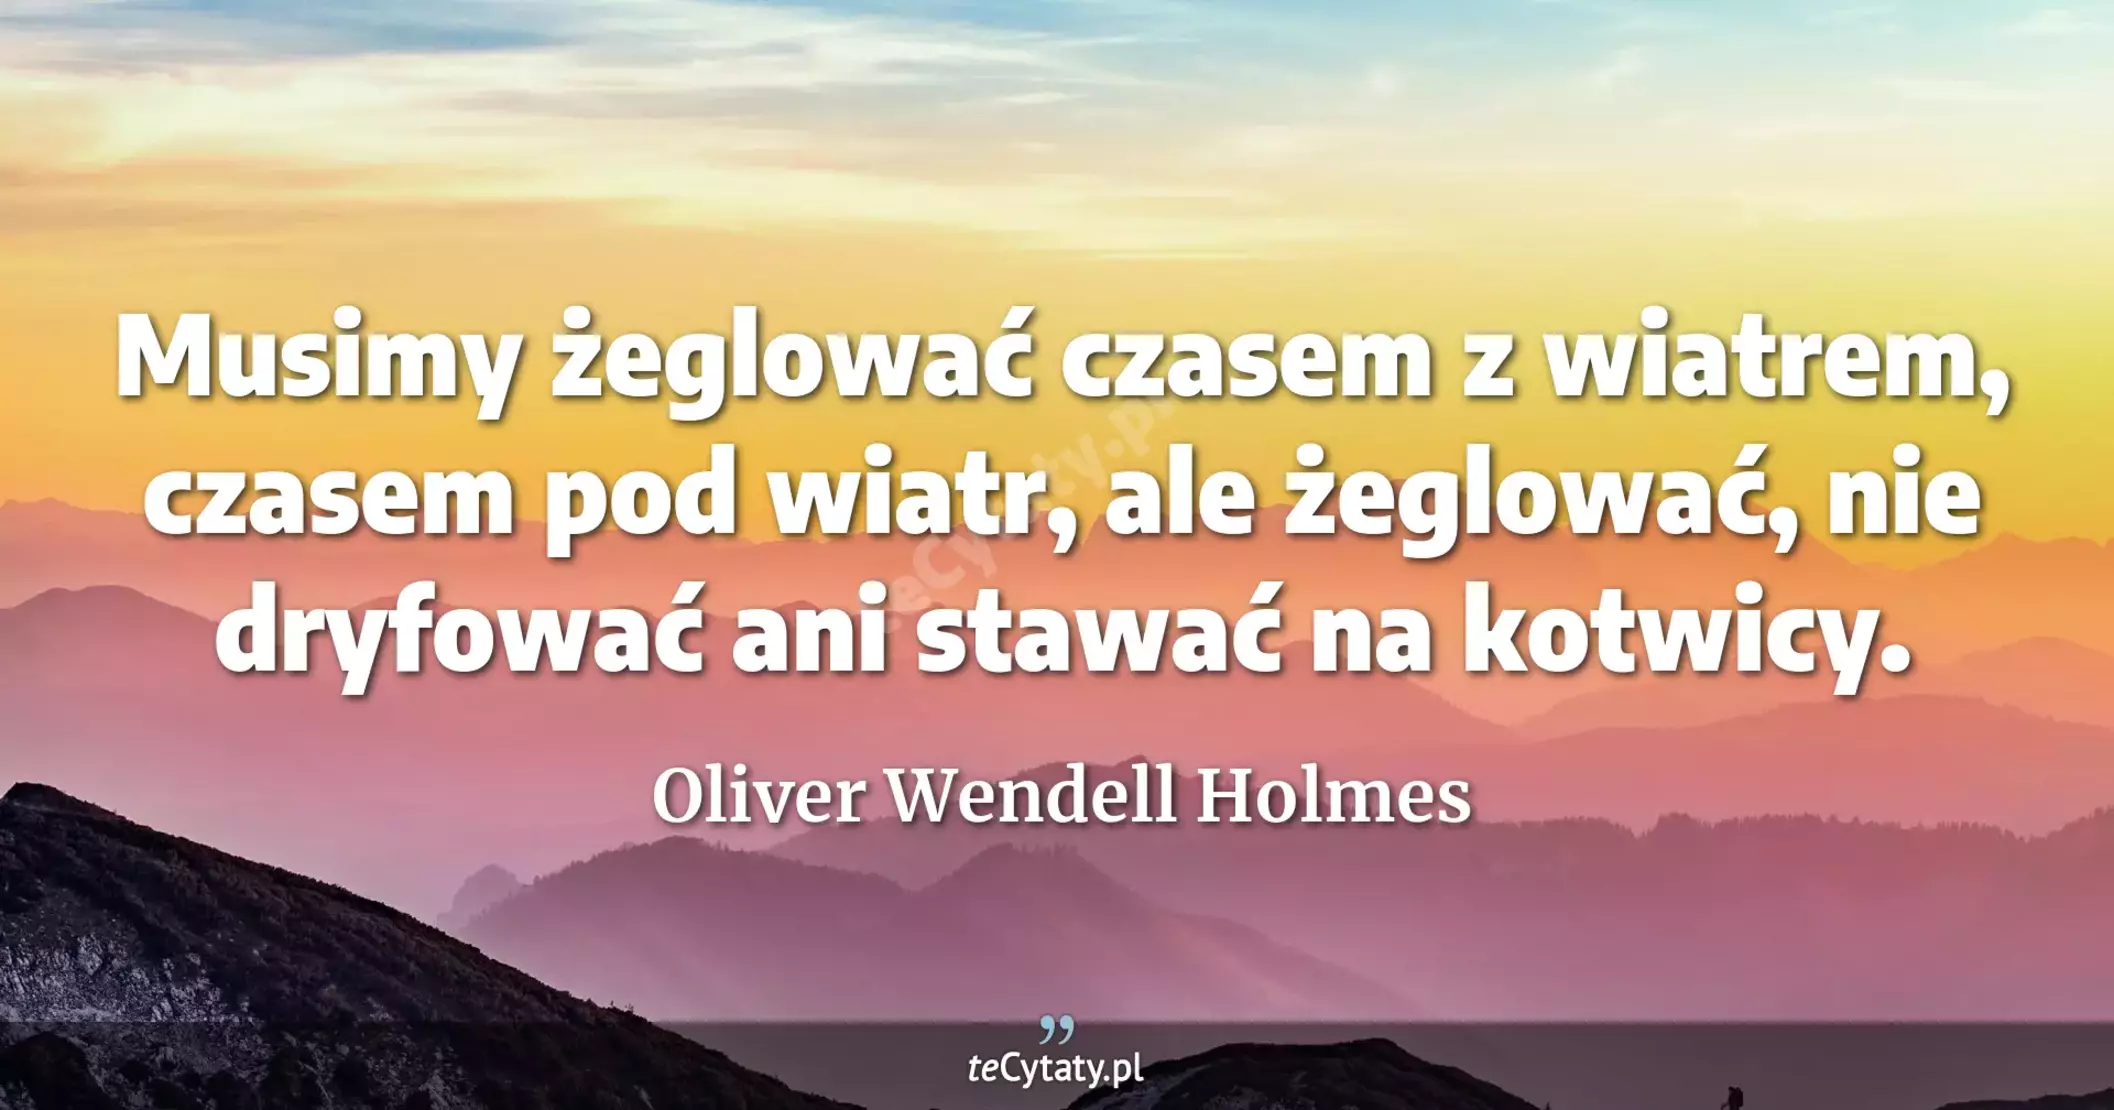 Musimy żeglować czasem z wiatrem, czasem pod wiatr, ale żeglować, nie dryfować ani stawać na kotwicy. - Oliver Wendell Holmes